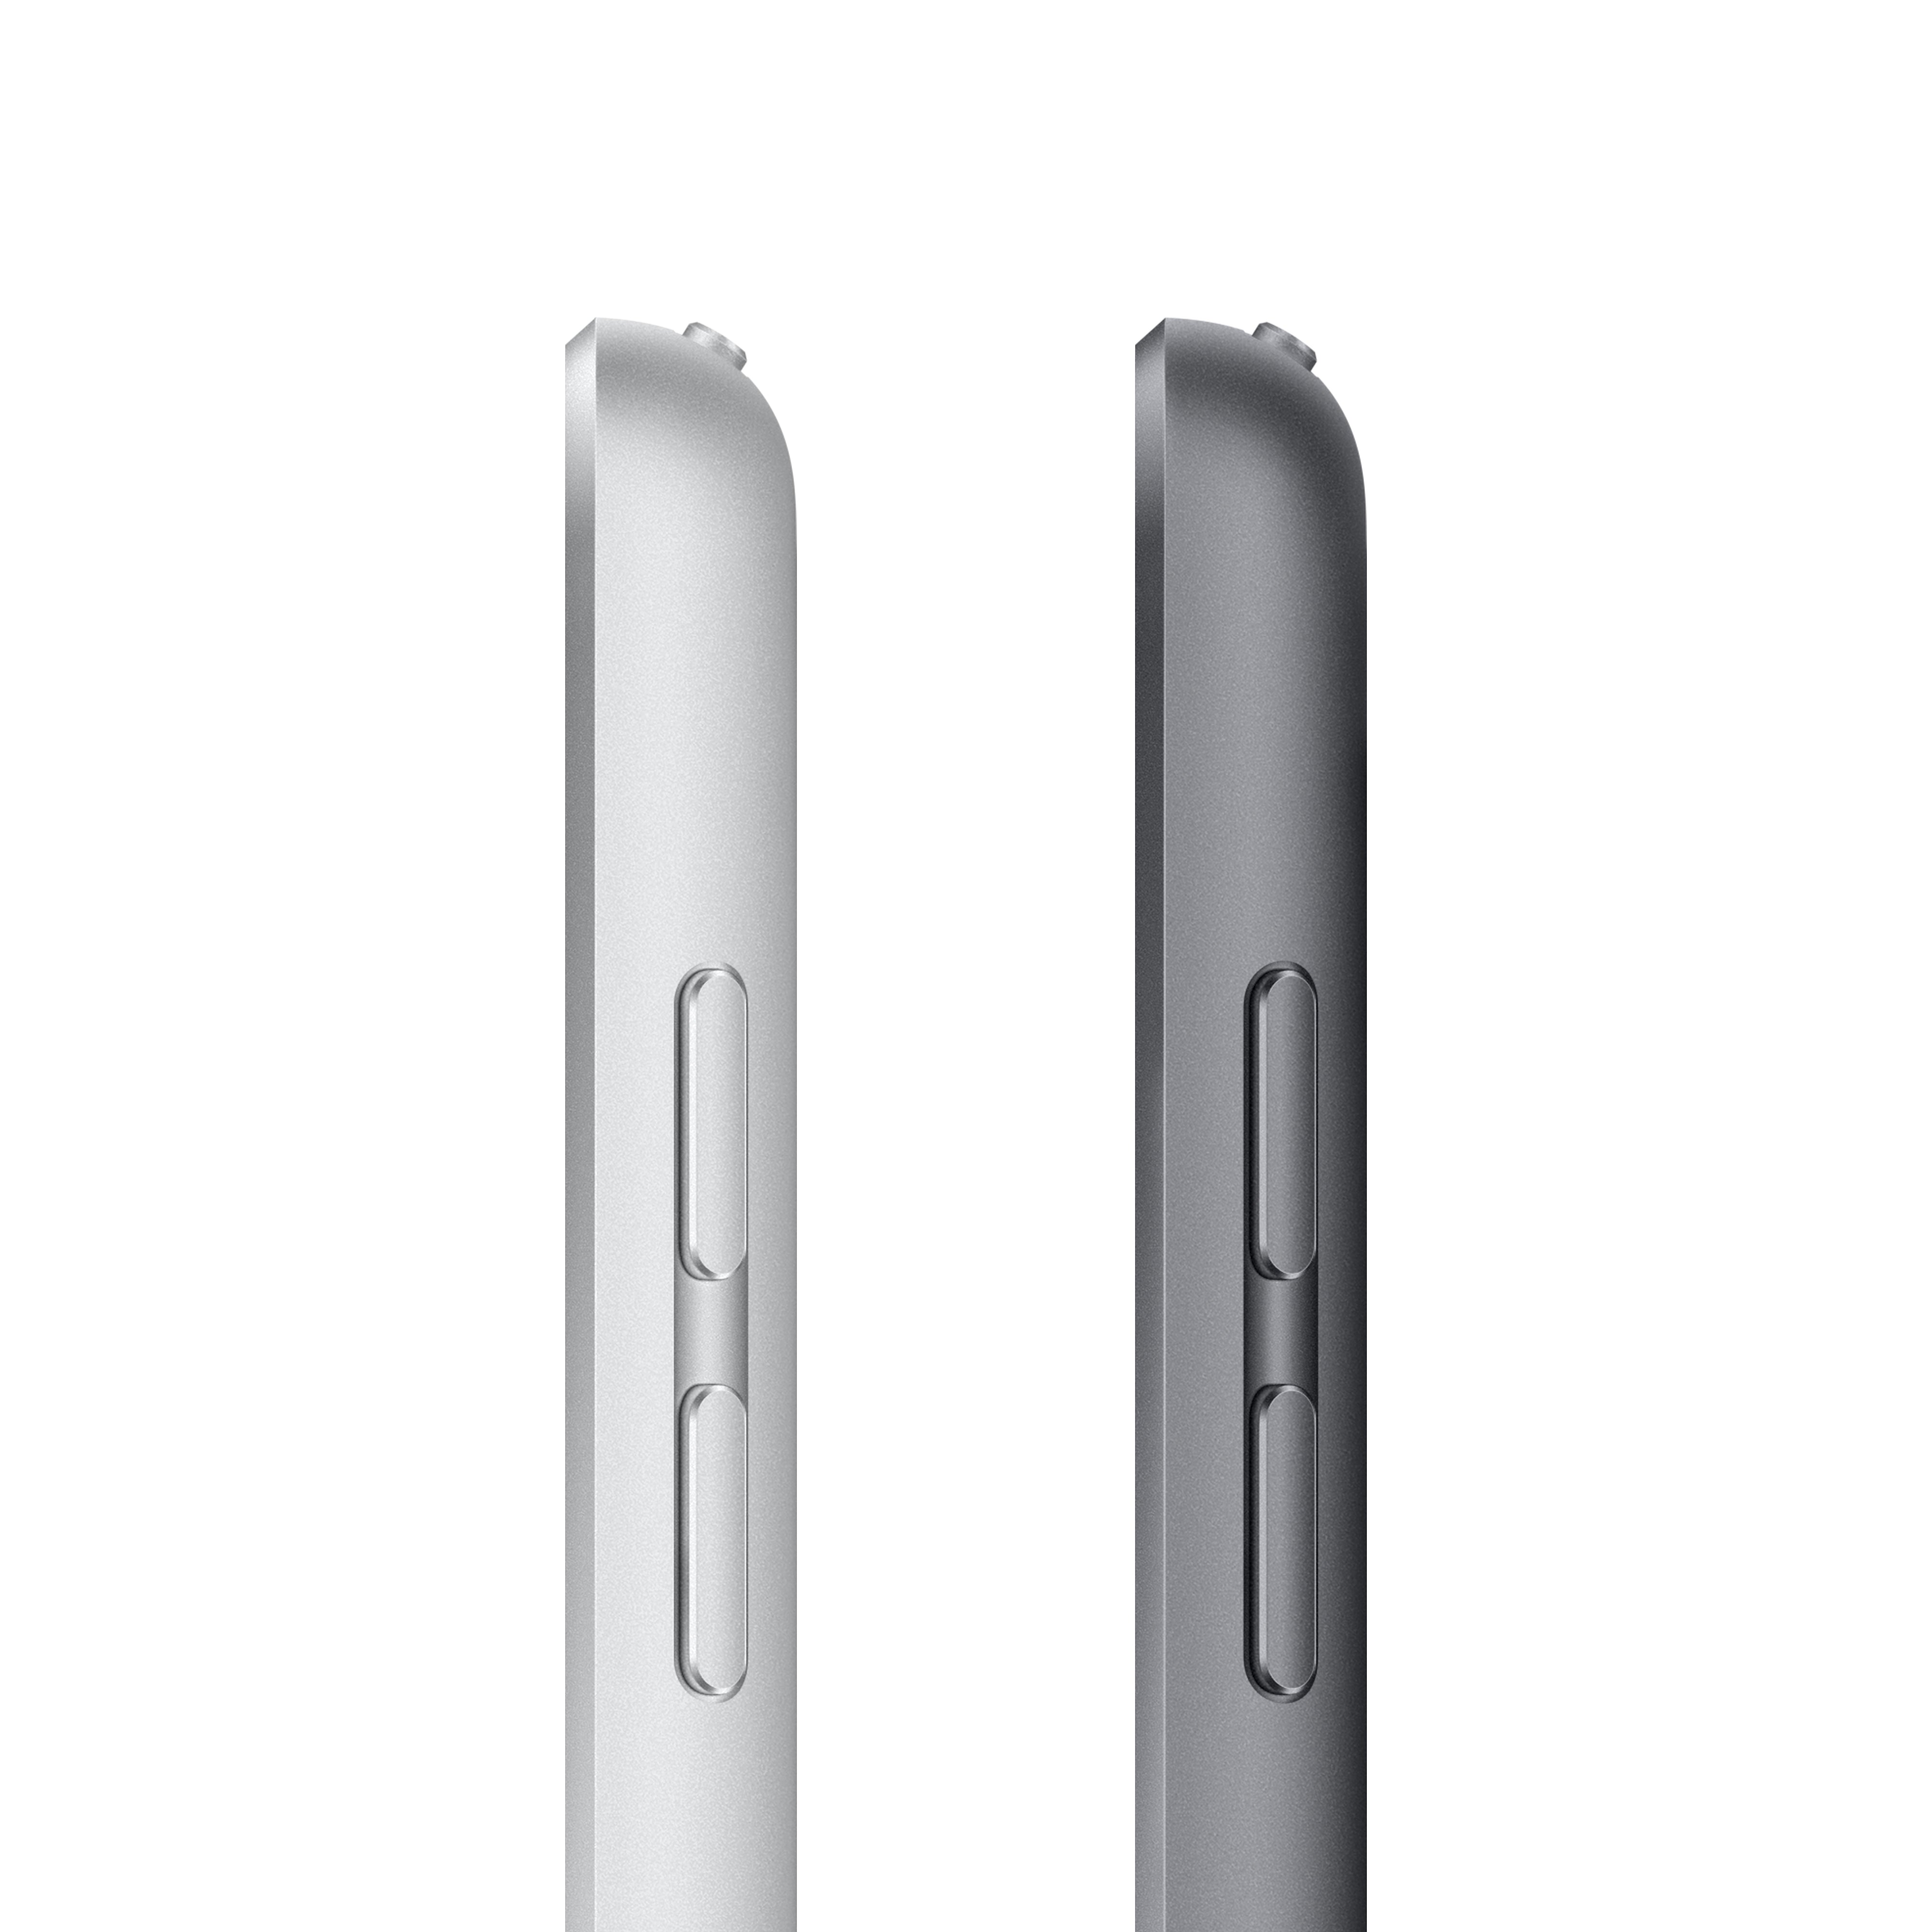 iPad 9th Gen 10.2-inch Wi-Fi + Cellular 64GB - Space Grey